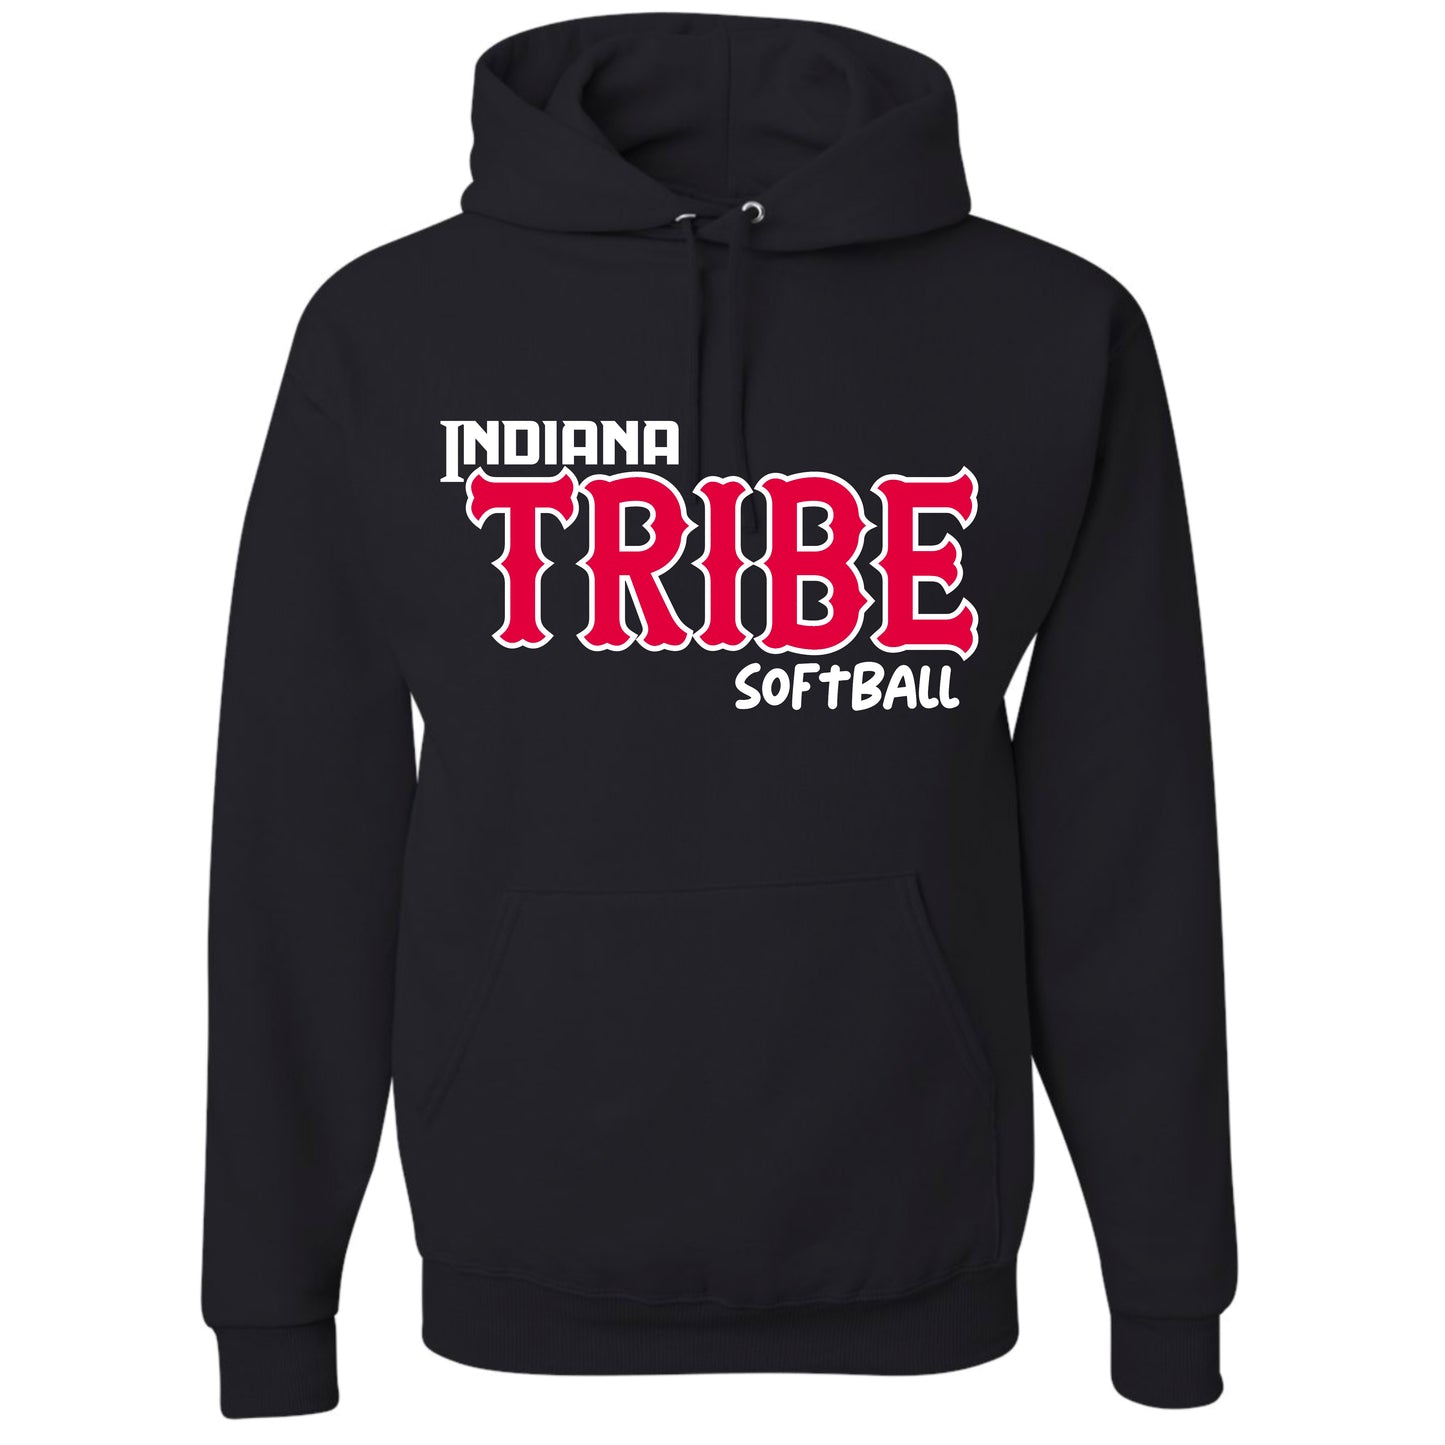 Indiana Tribe Softball